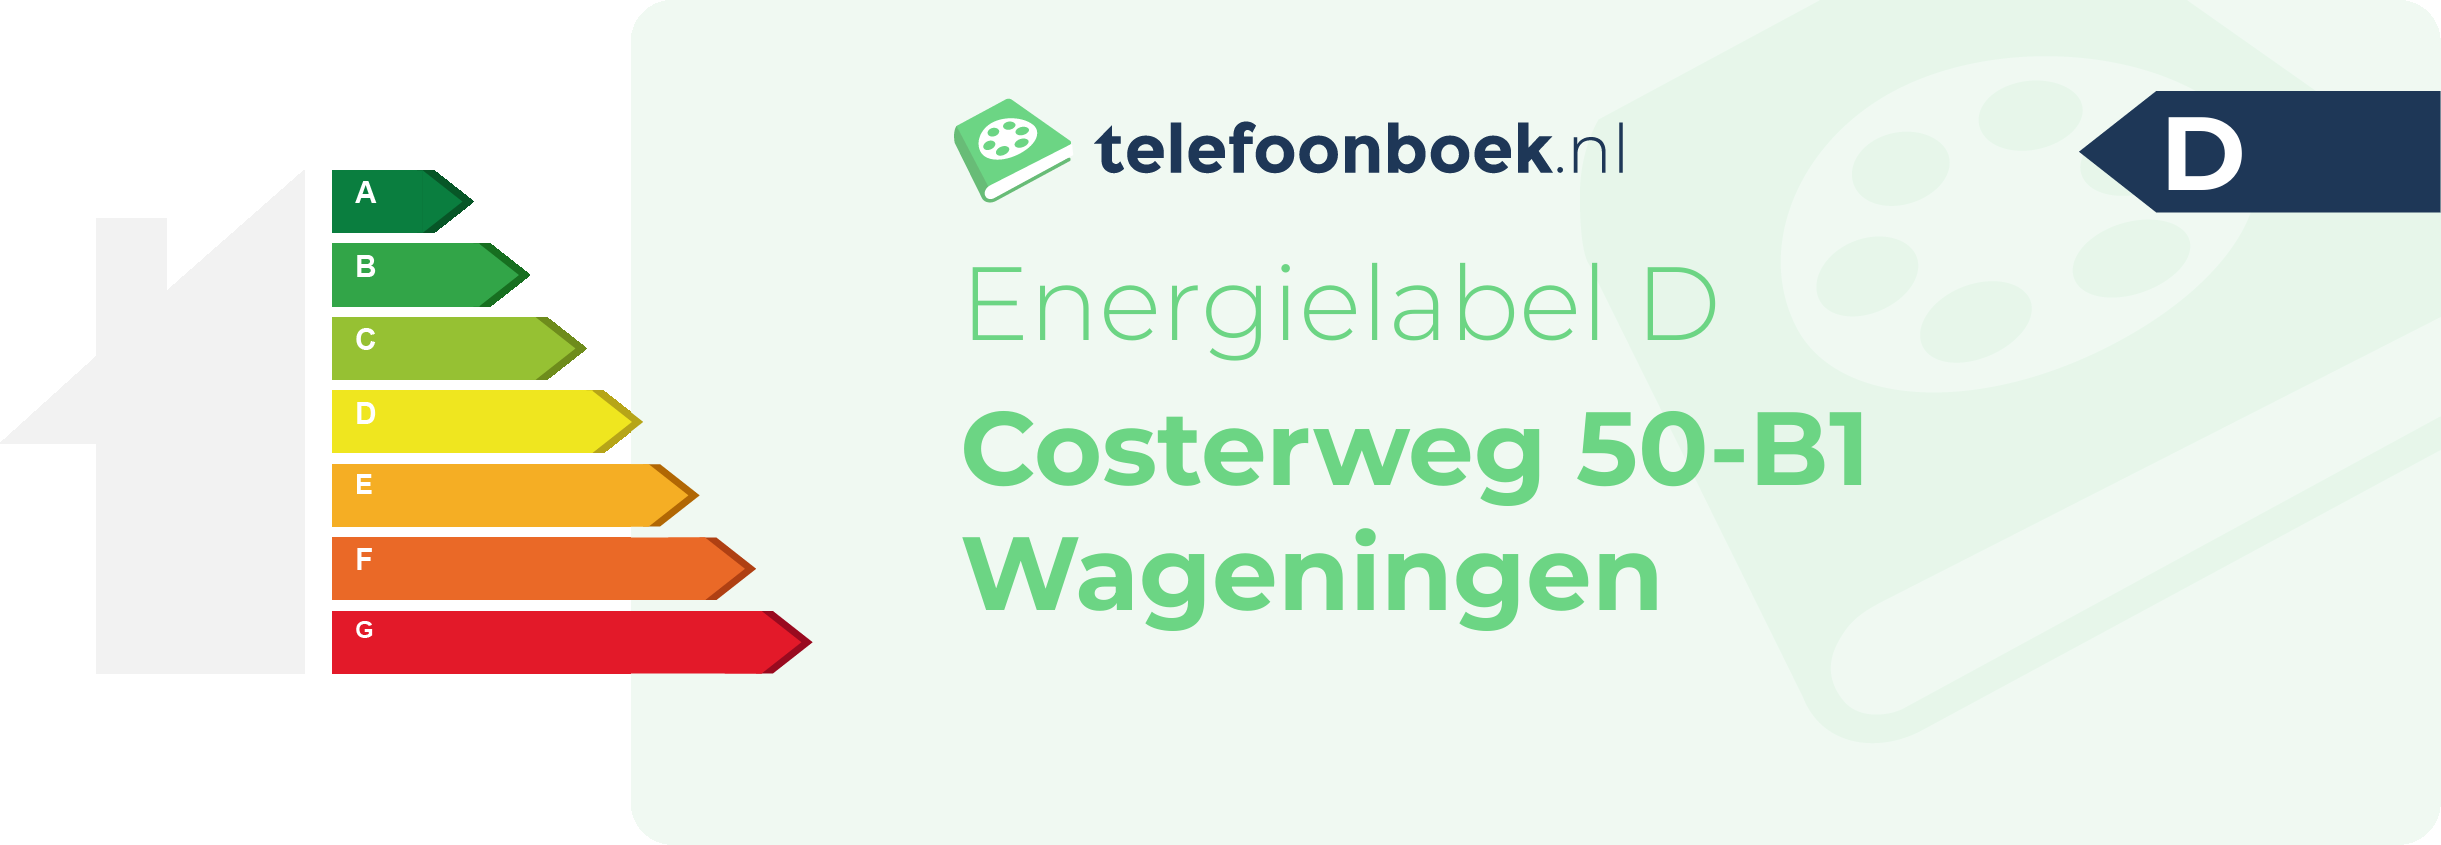 Energielabel Costerweg 50-B1 Wageningen